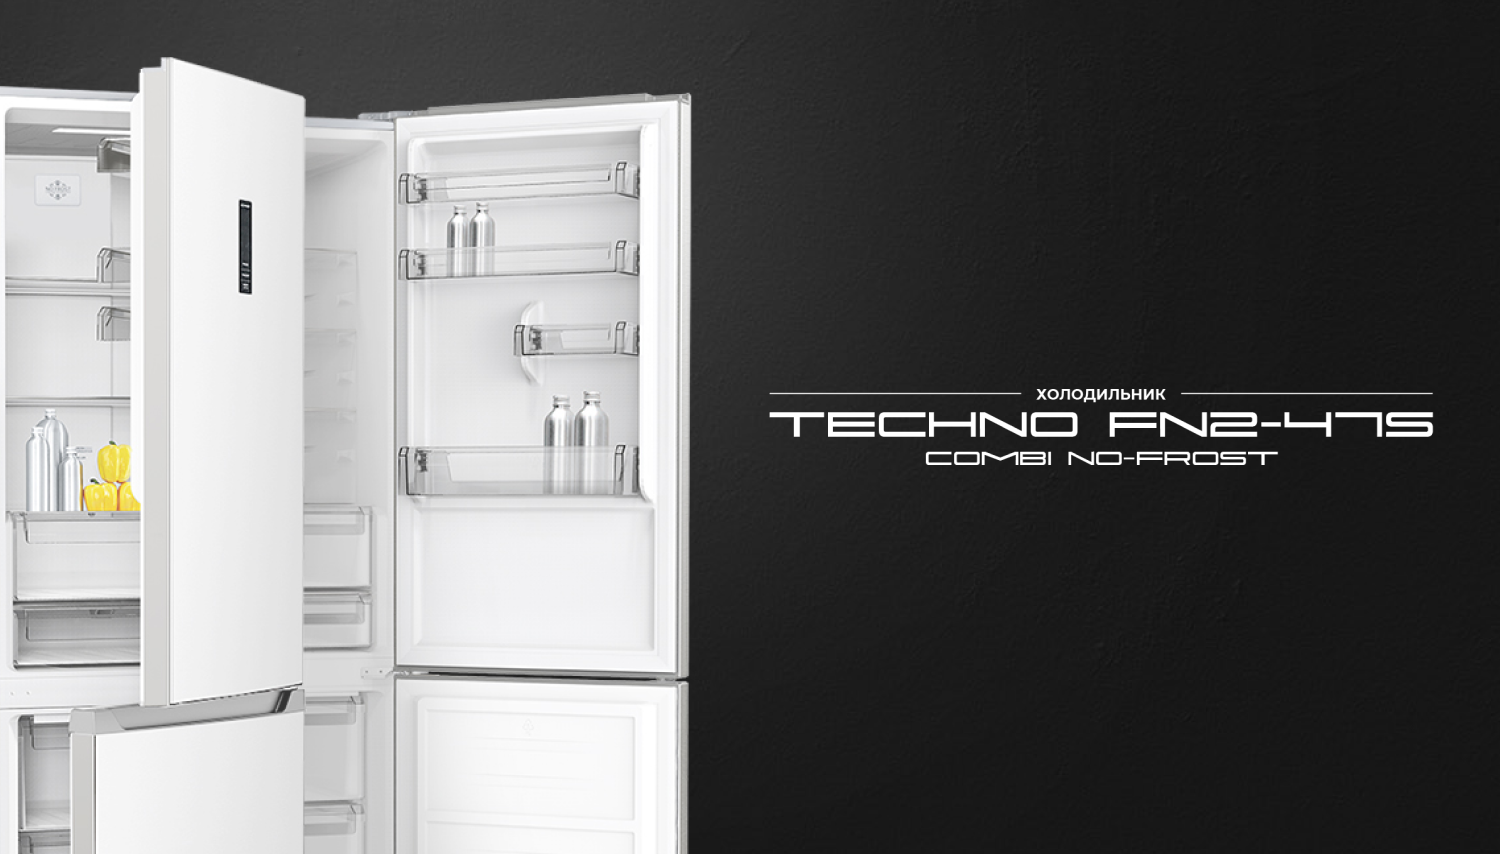 Combi No-Frost холодильник TECHNO FN2-47S